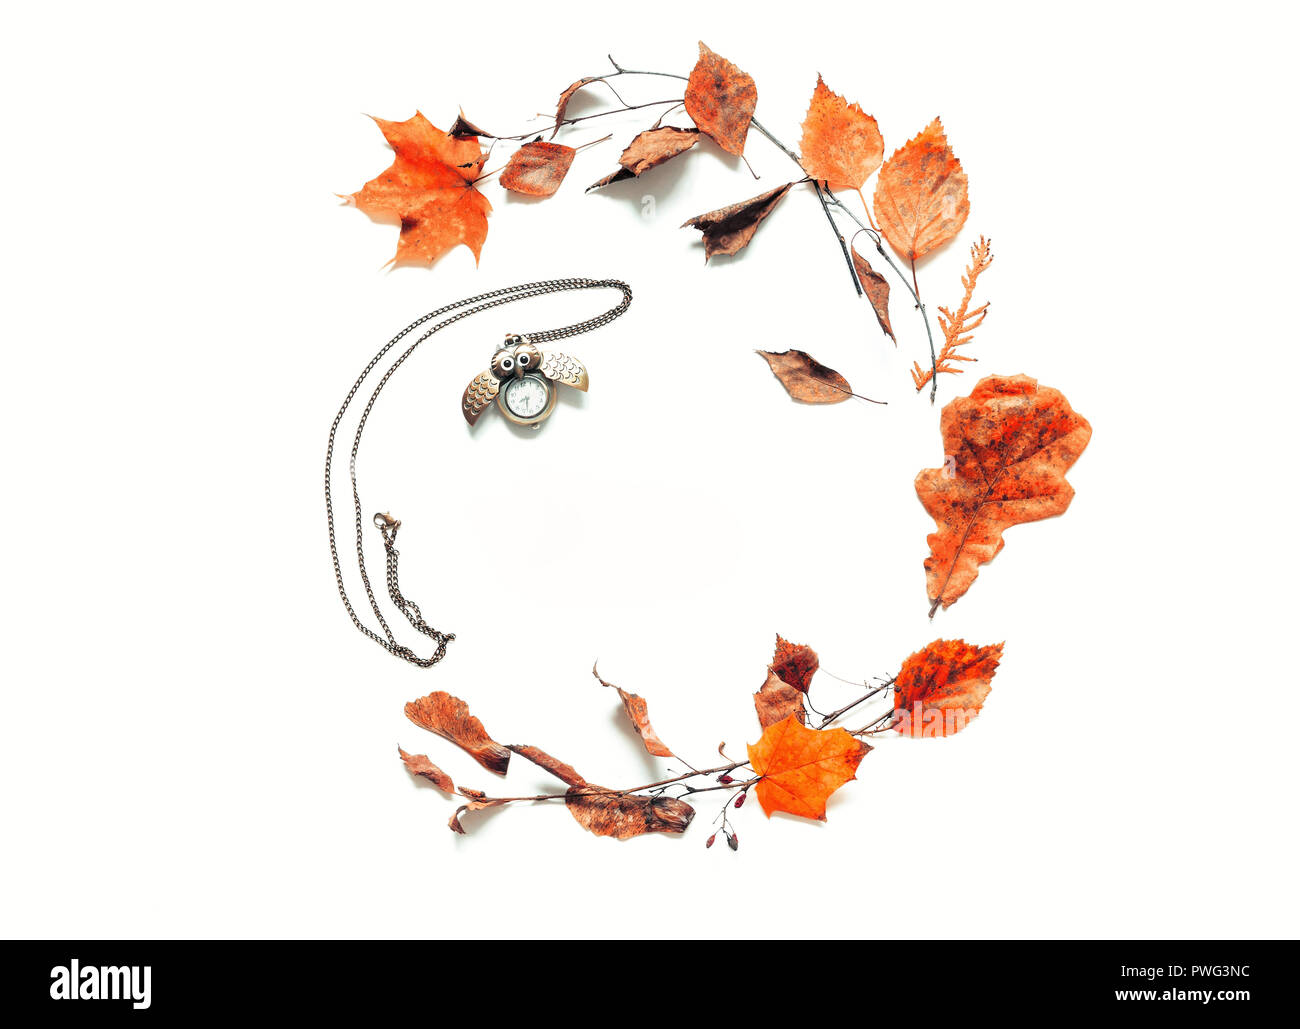 Herbst Hintergrund - trockene Blätter im Herbst und alte Bronze clock in Form von die Eule auf den weißen Hintergrund. Herbst noch Leben mit Platz für Text Stockfoto